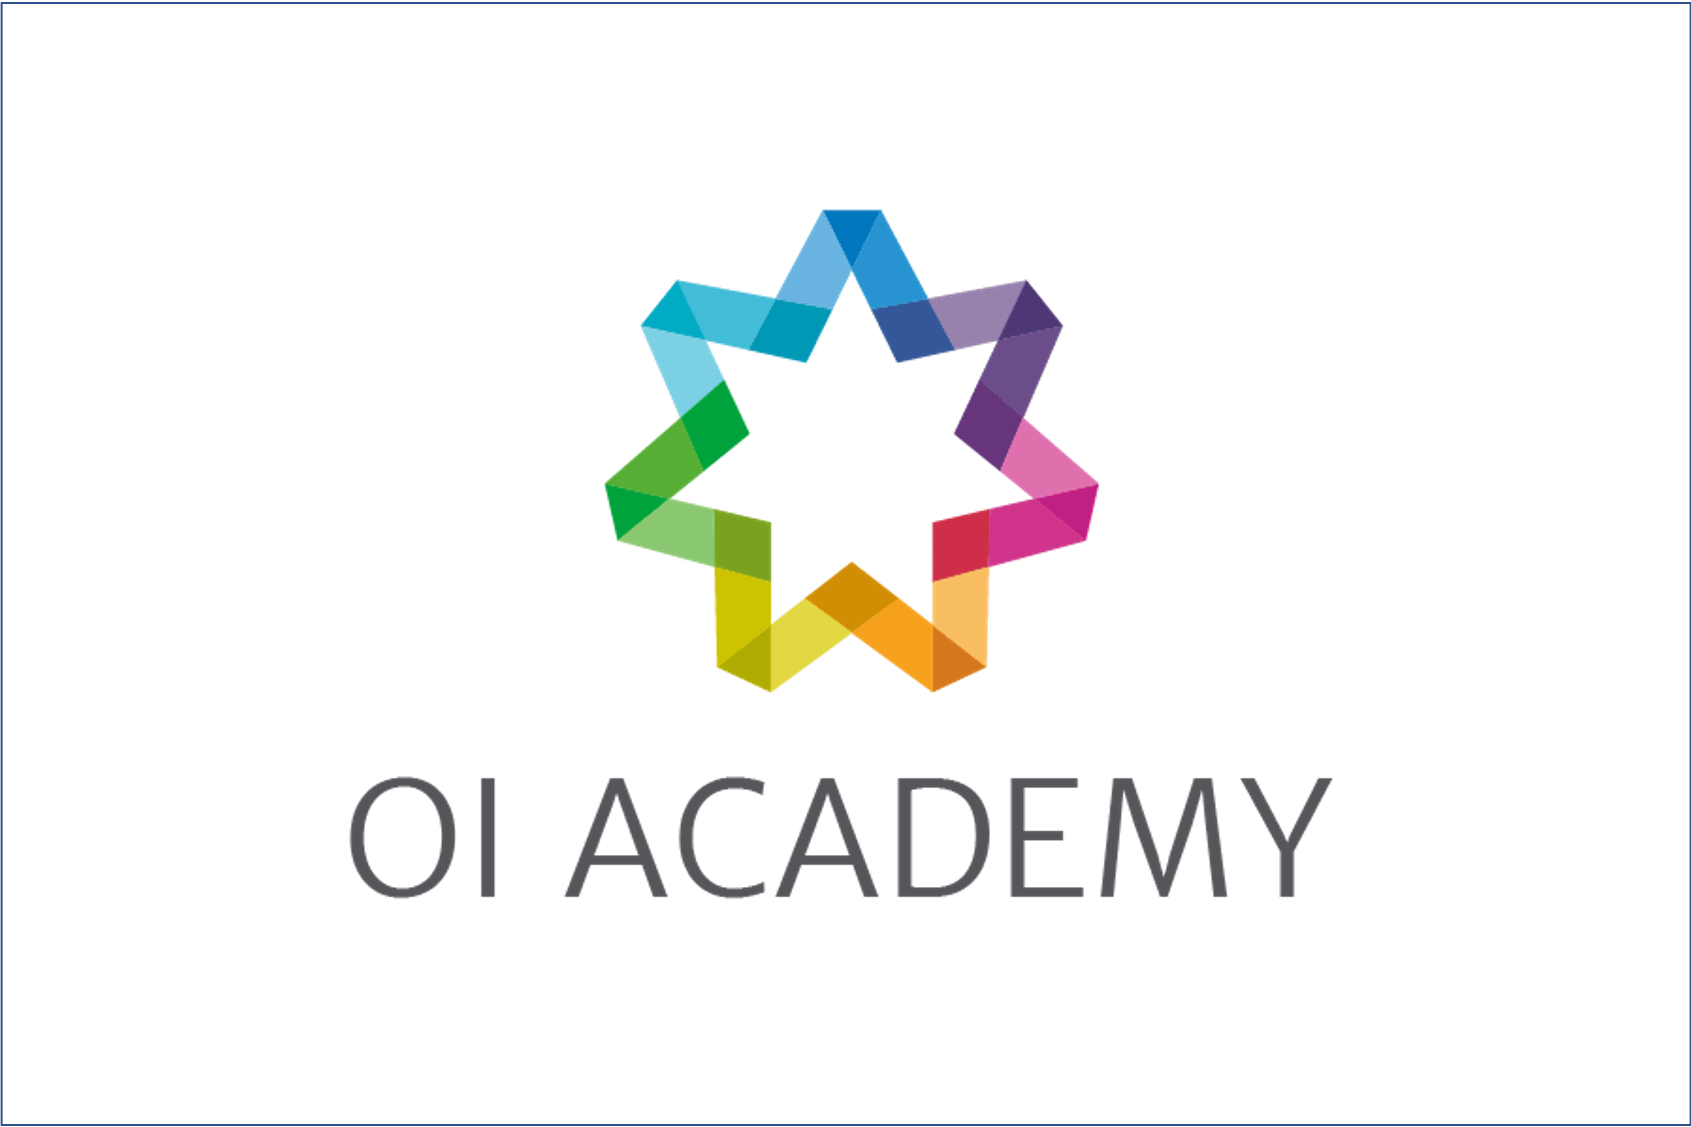 OI Academy Logo 3:4